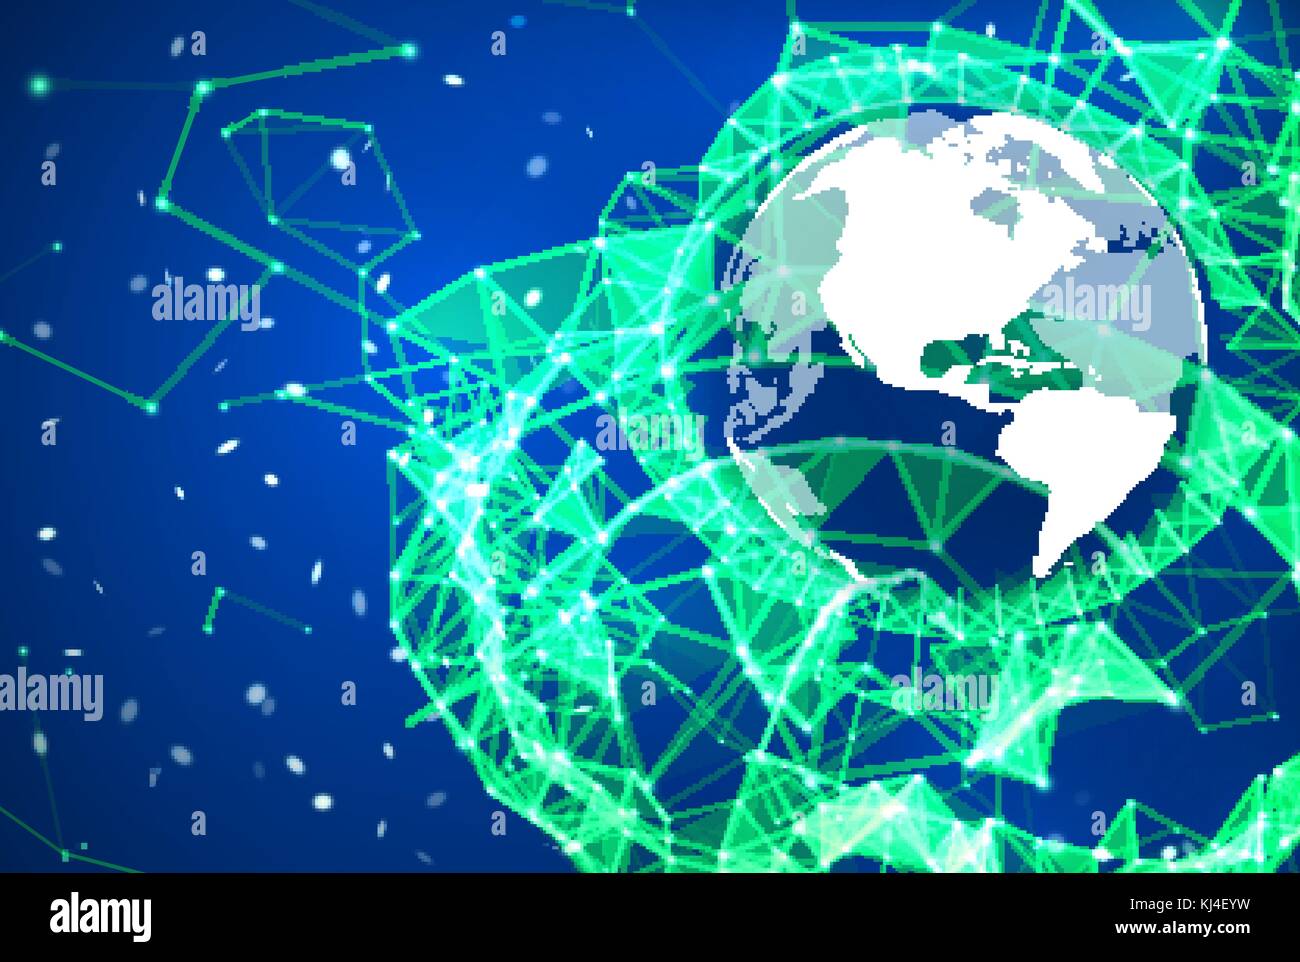 Globales Netzwerk Verbindung Hintergrund. Blaue und grüne Technologie Kulisse. Telekommunikation broadcast Konzept. Glühende plexus Struktur mit Erde - Planet und Partikel. Abstract Vector Illustration. Stock Vektor